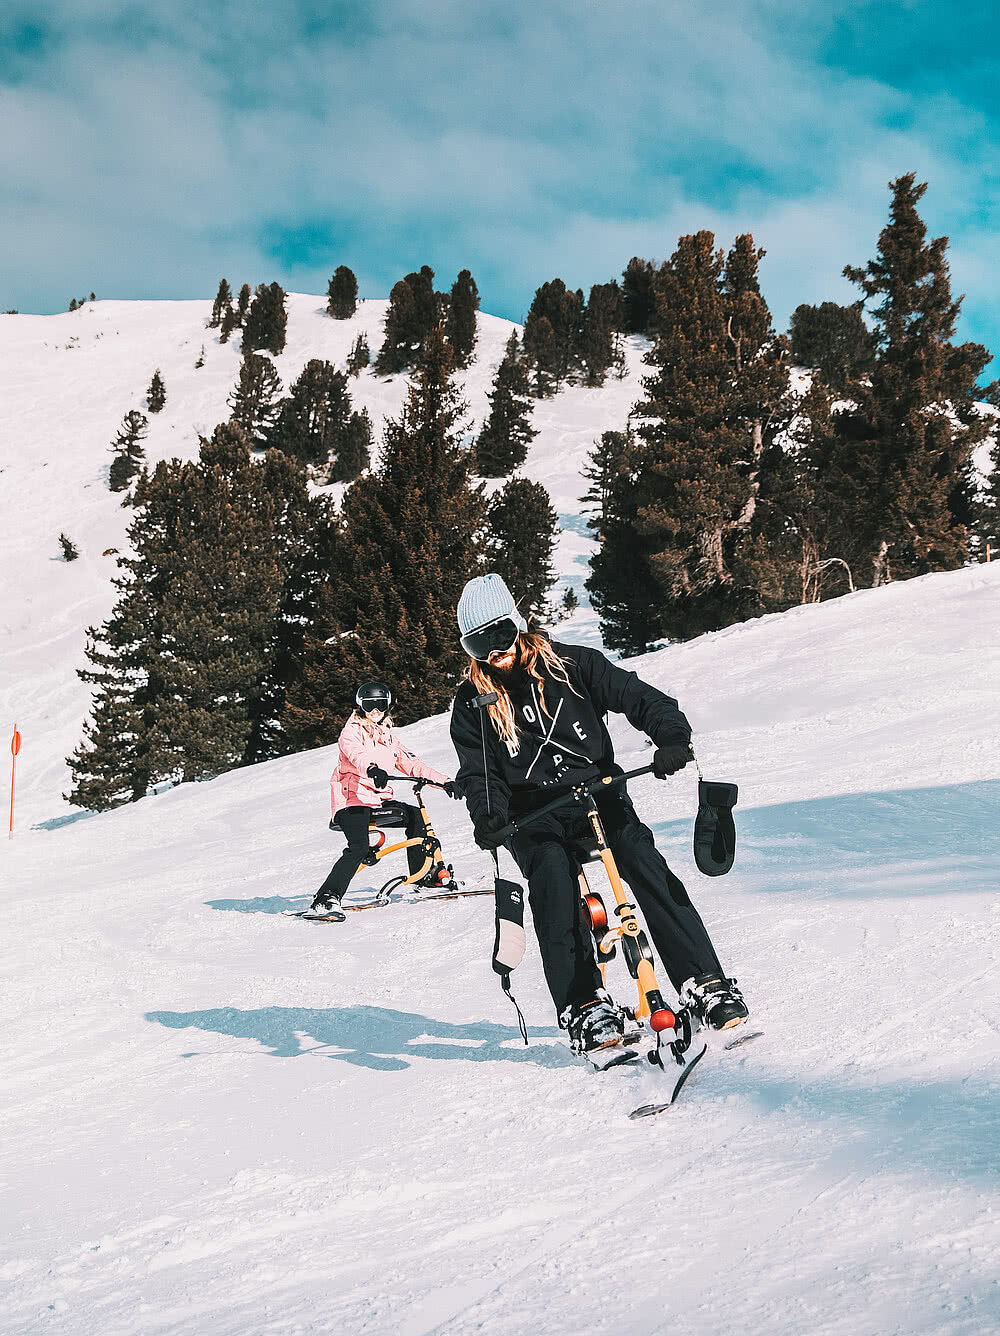 Snowbiken in Obertauern für actionreiche Wintertage